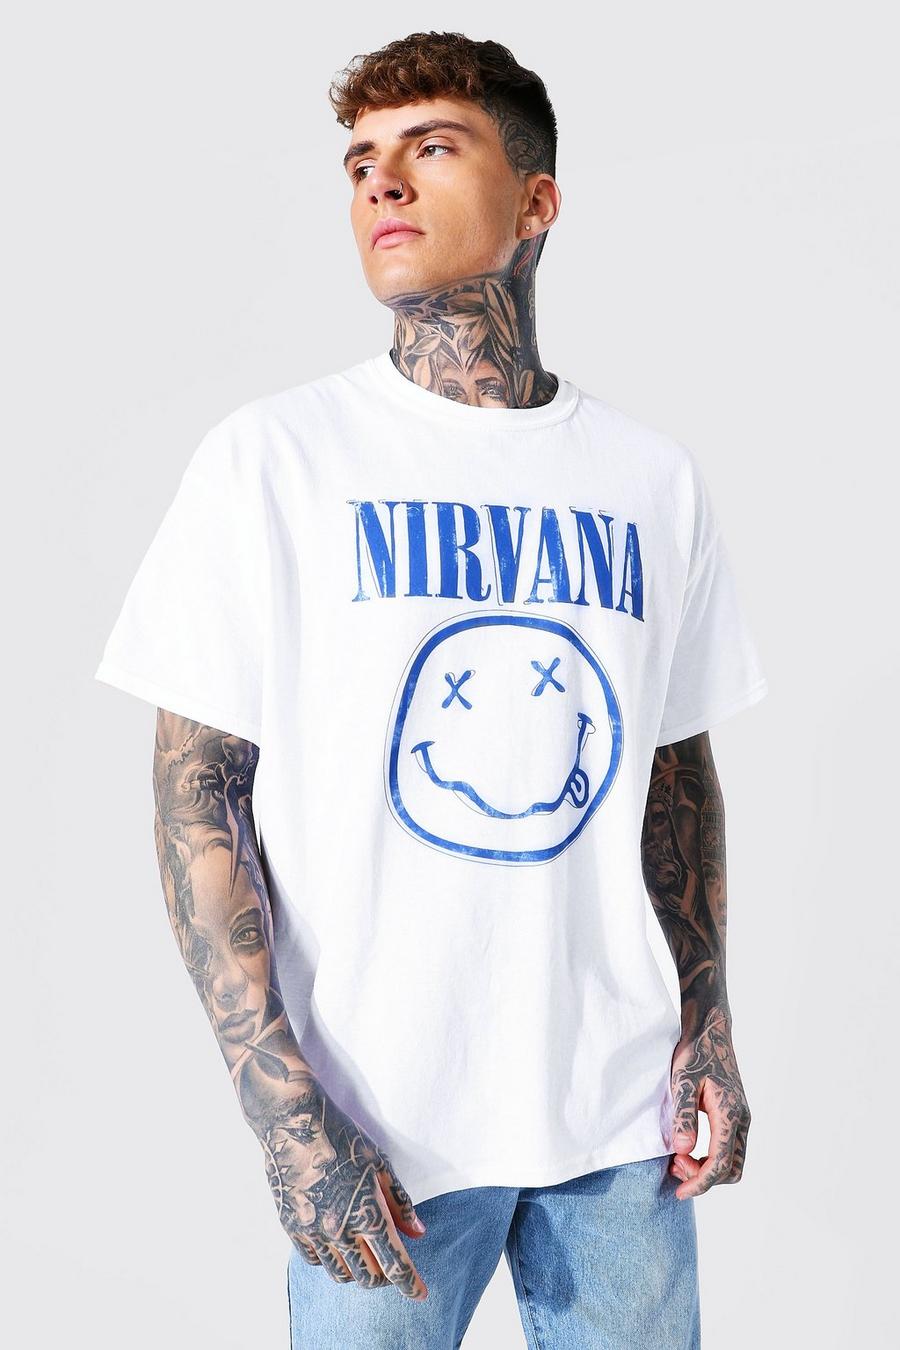 Men's Oversized Nirvana Face License T-shirt